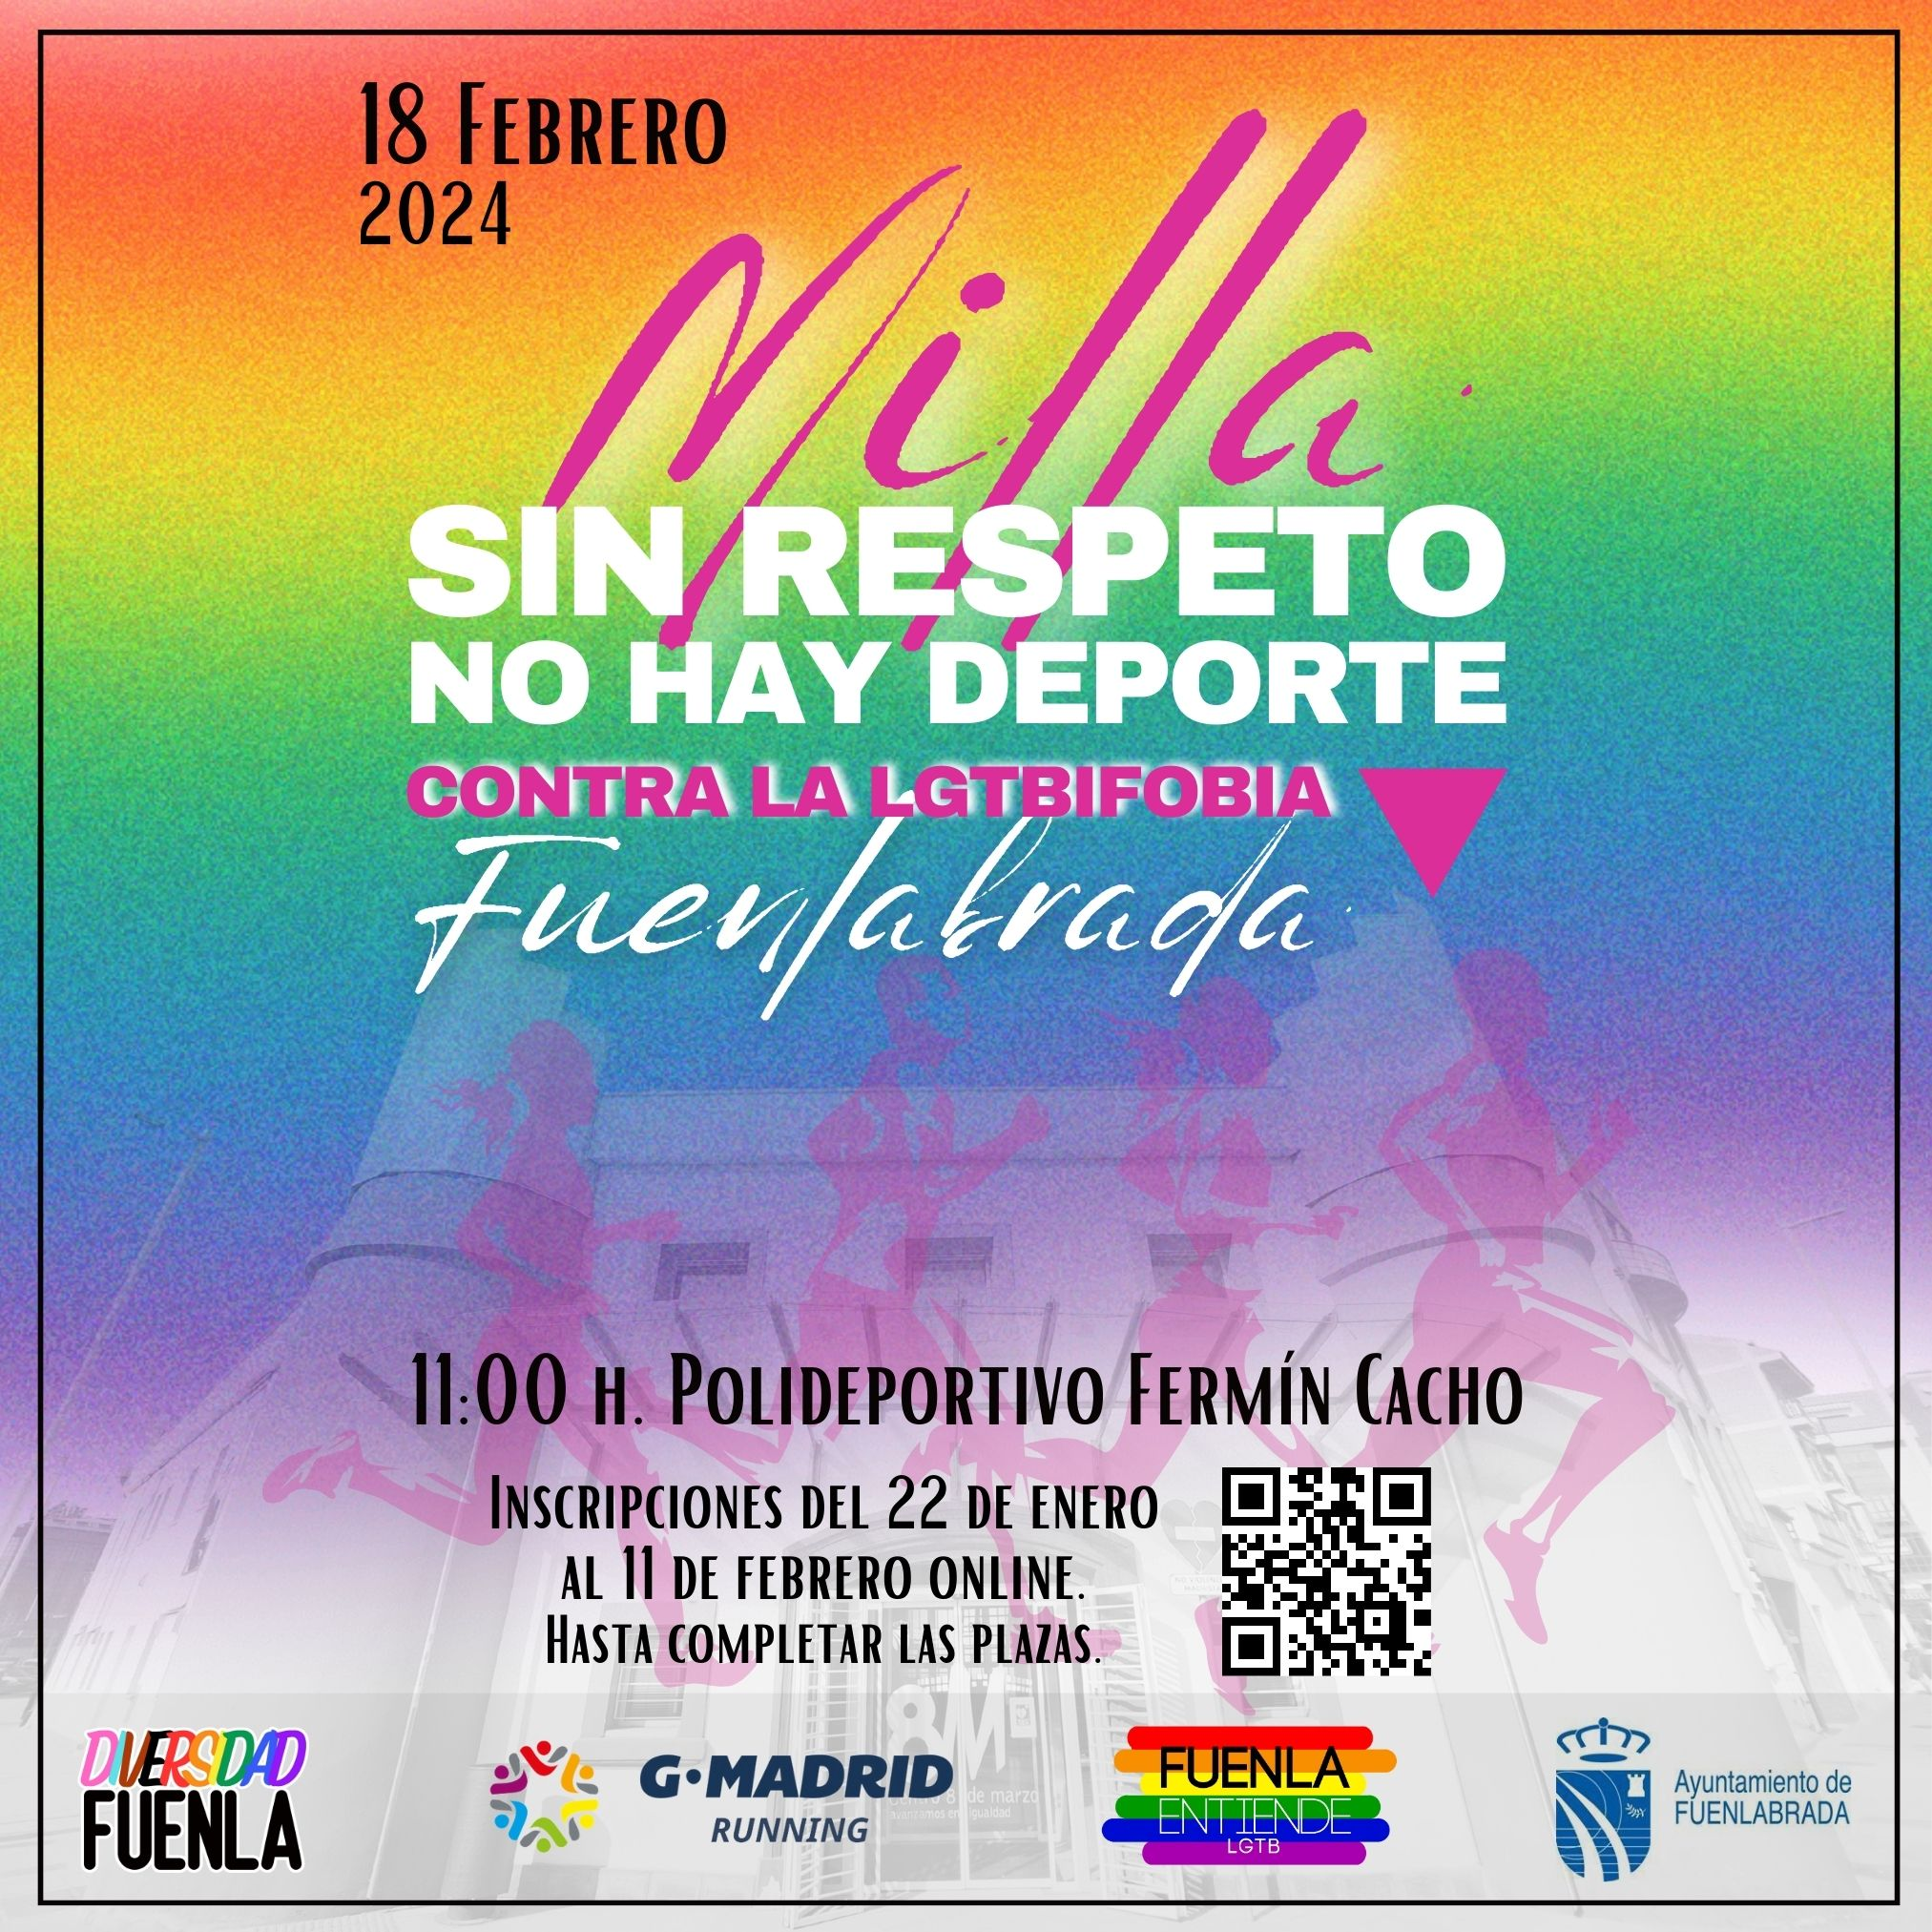 Corre por la diversidad: Milla contra la LGTBIfobia en Fuenlabrada el 18 de febrero. Únete y apoya la campaña 'Sin respeto no hay deporte'.